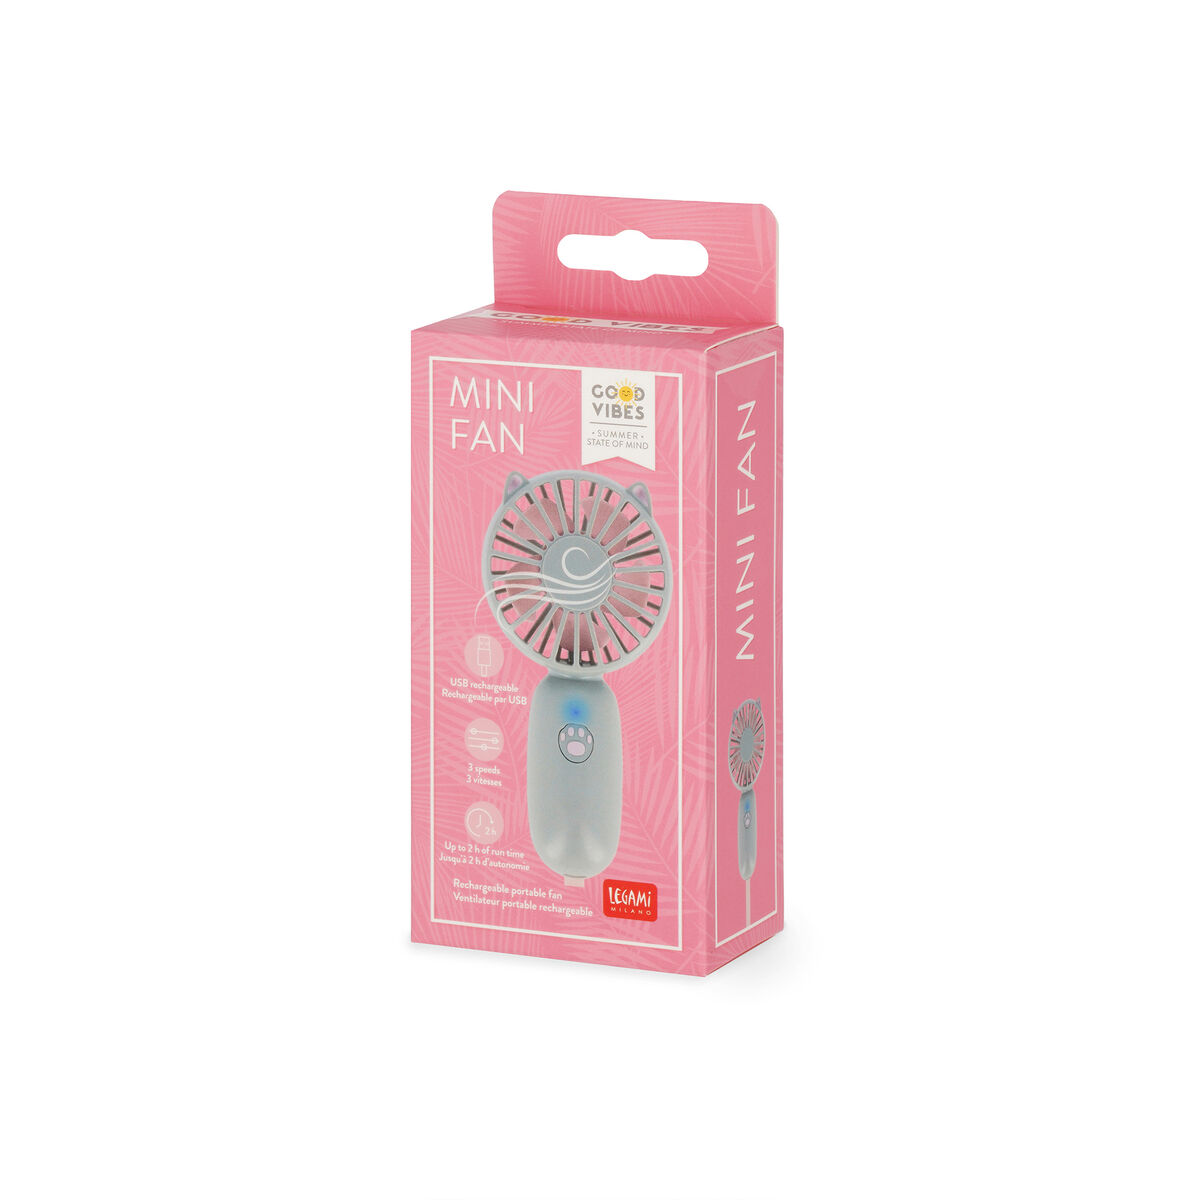 Ventilateur Portable Rechargeable - Mini Fan, , zoo